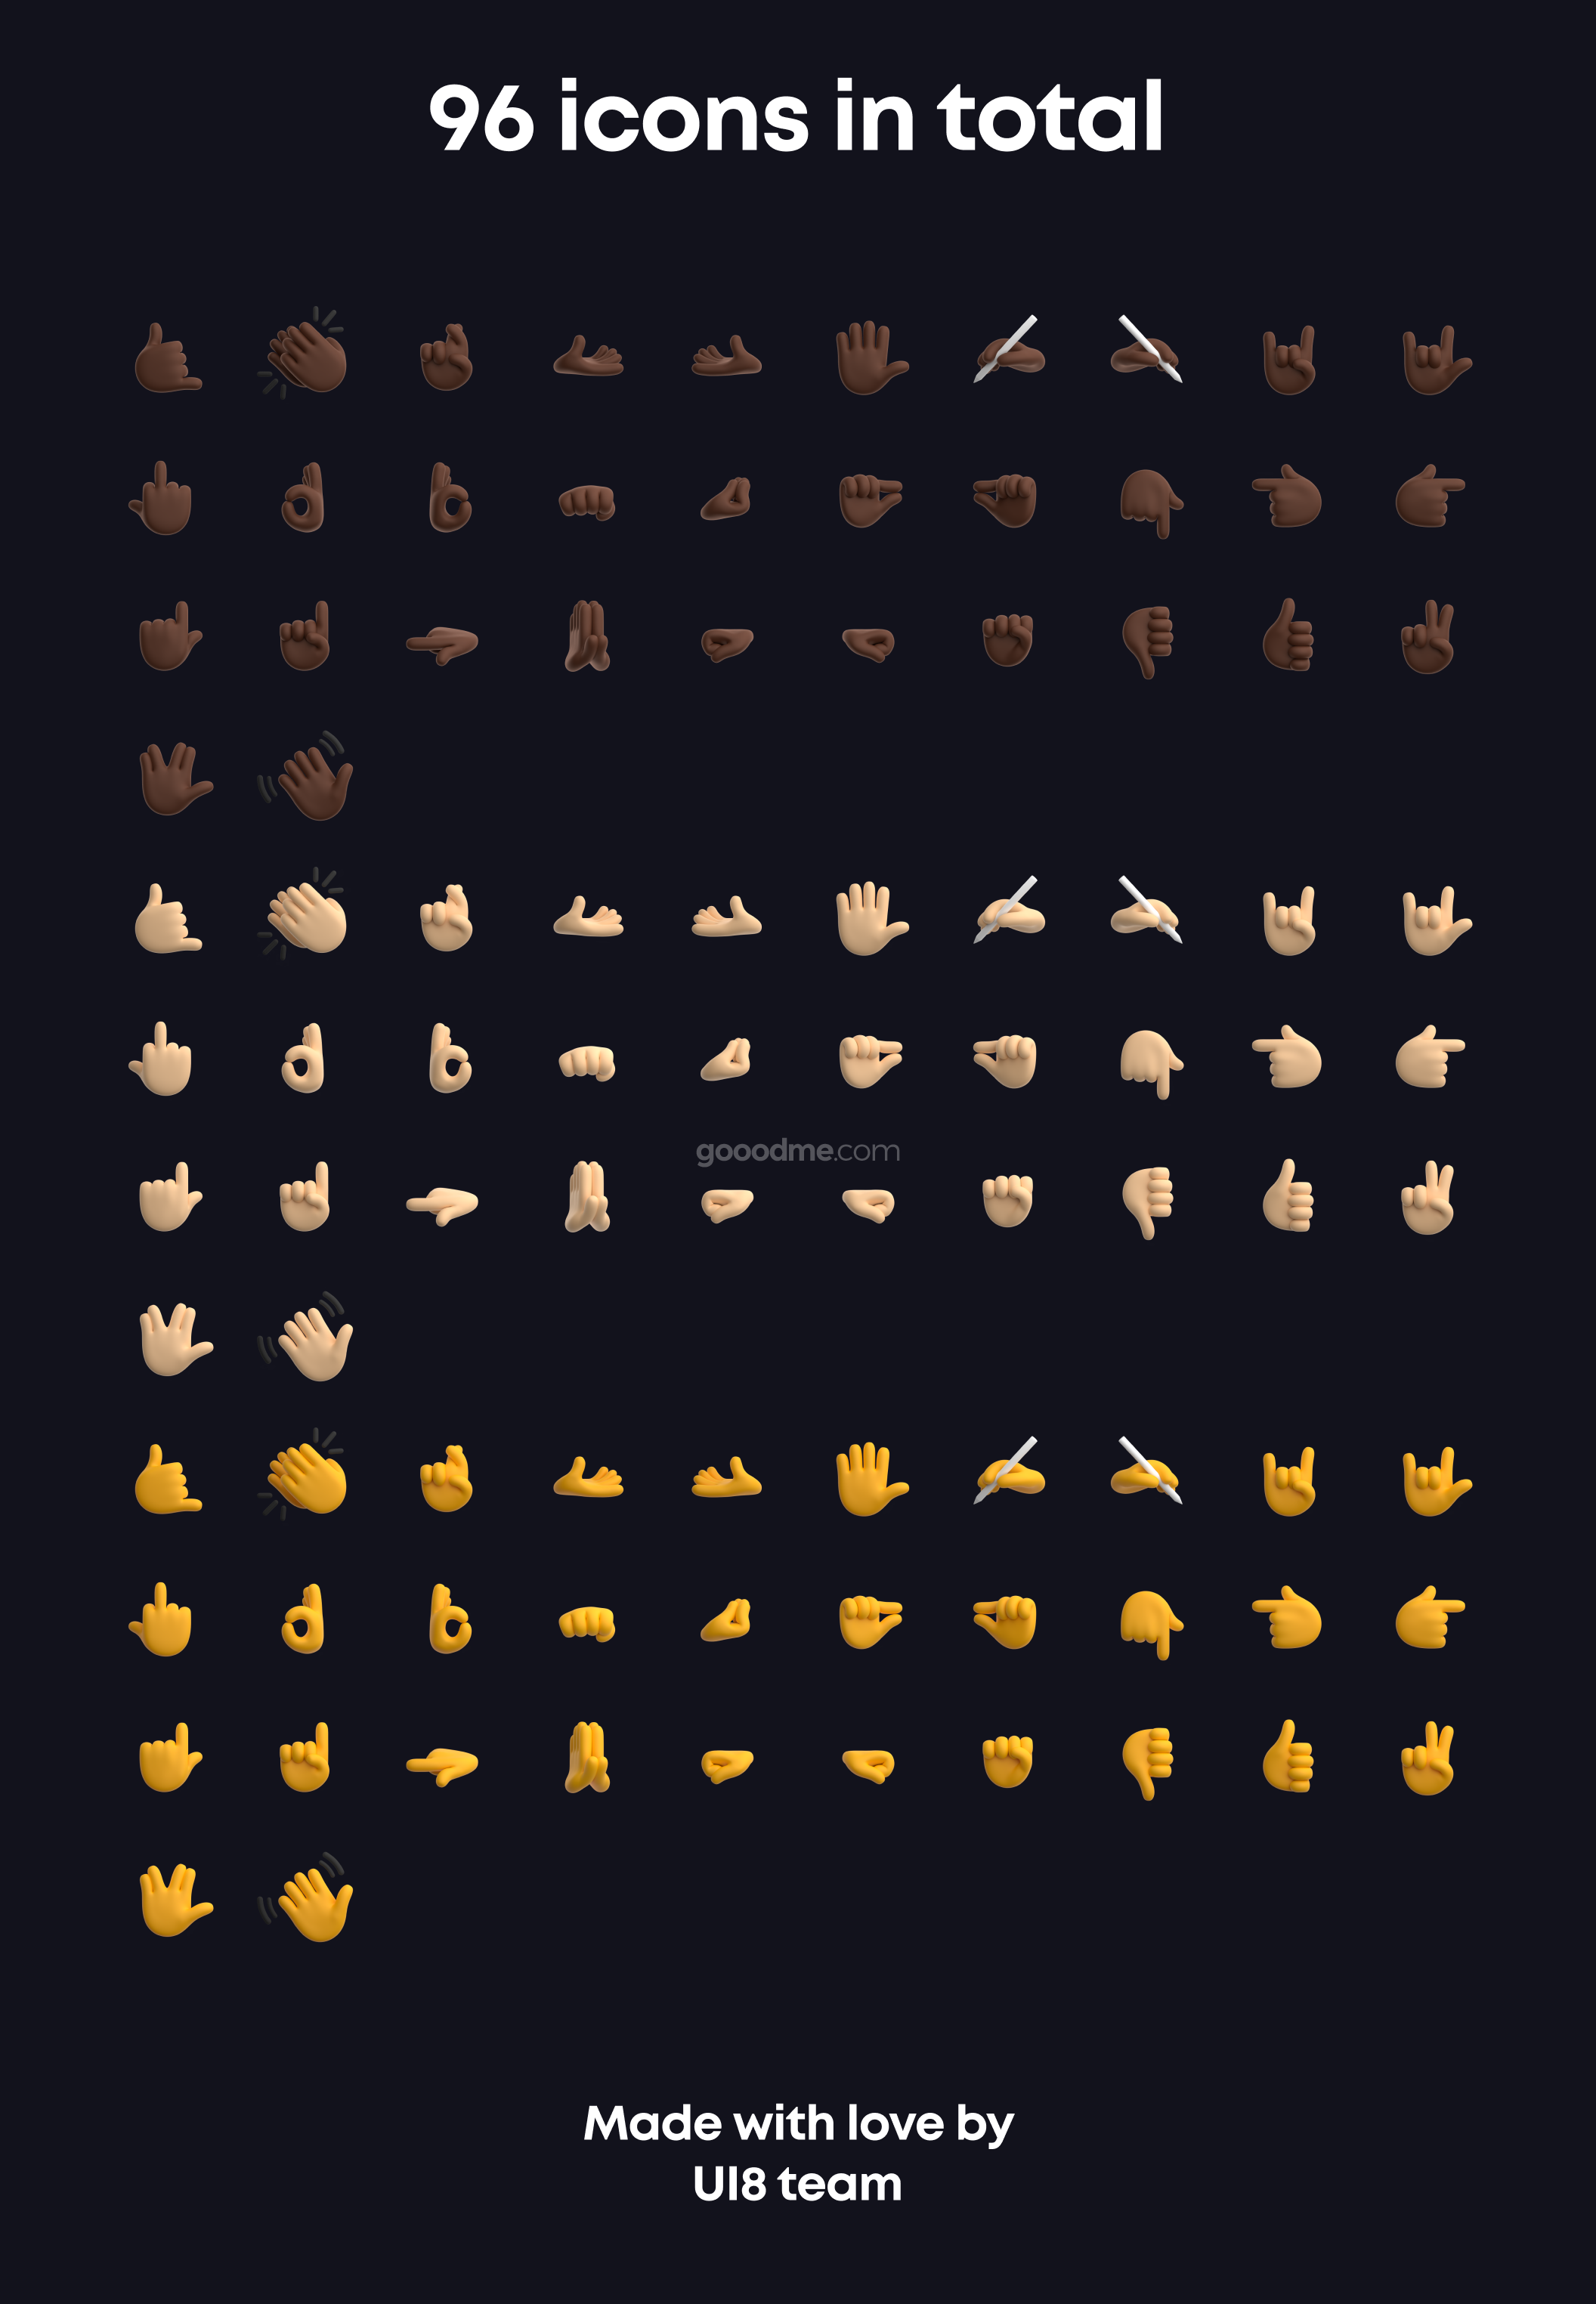 100+款可爱手势 3D 表情包图标素材Gestures 3D Emoji Pack